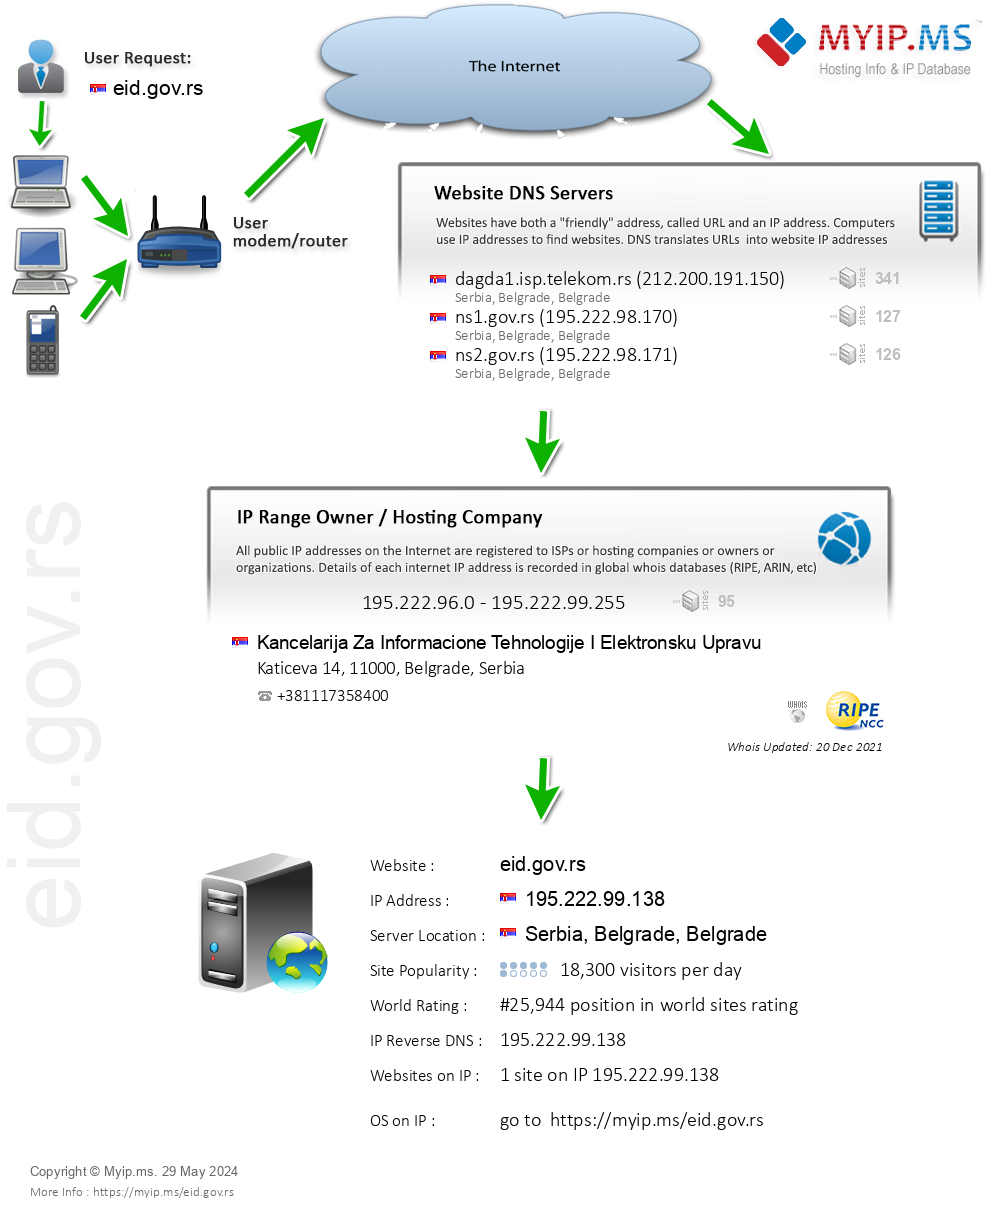 Eid.gov.rs - Website Hosting Visual IP Diagram